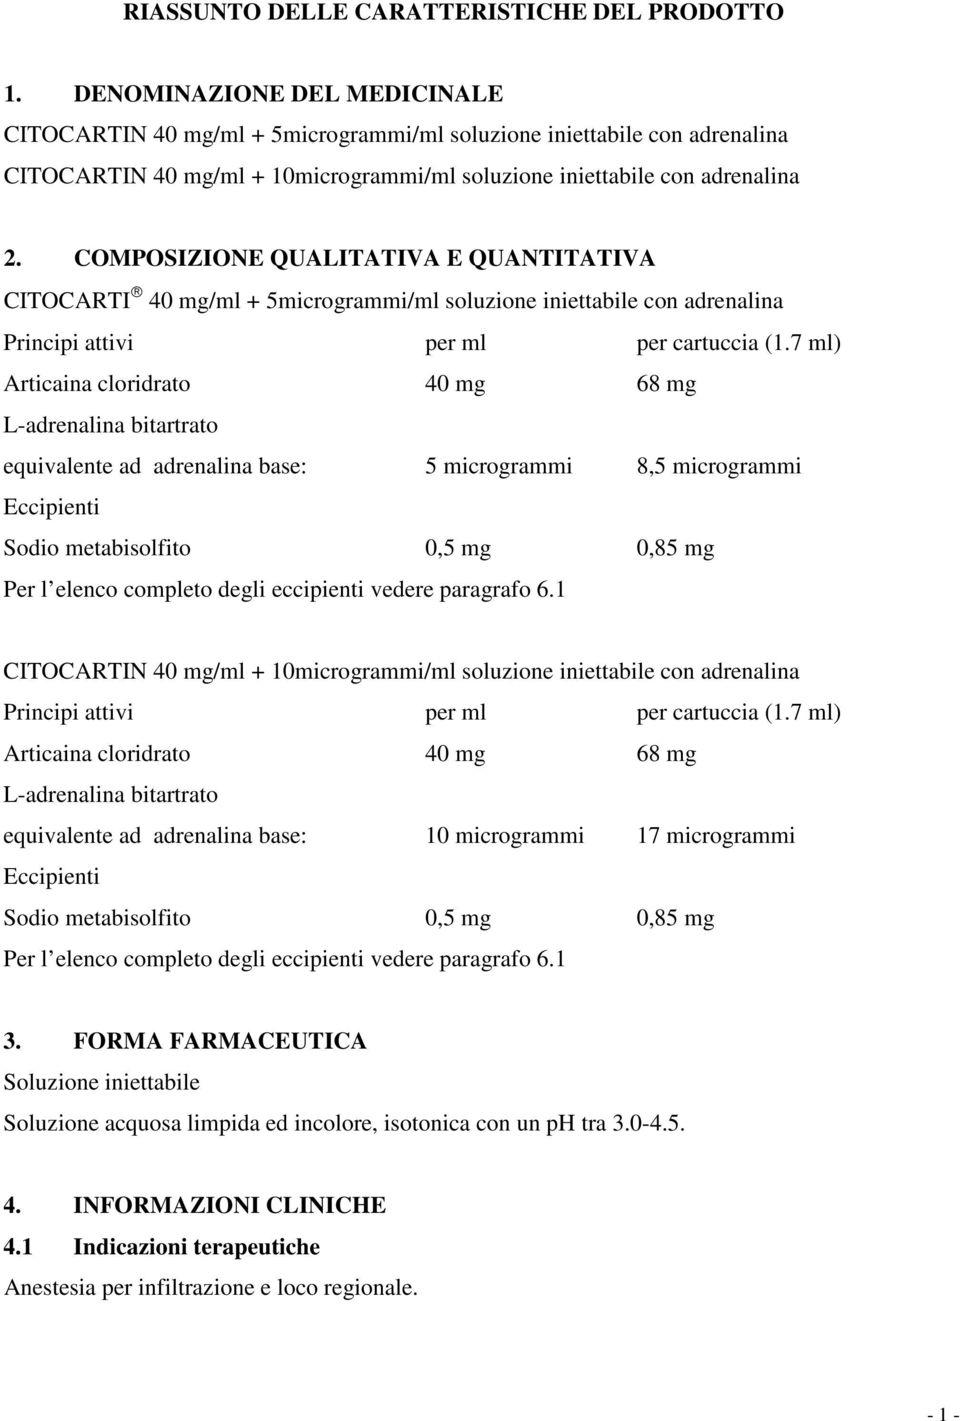 COMPOSIZIONE QUALITATIVA E QUANTITATIVA CITOCARTI 40 mg/ml + 5microgrammi/ml soluzione iniettabile con adrenalina Principi attivi per ml per cartuccia (1.